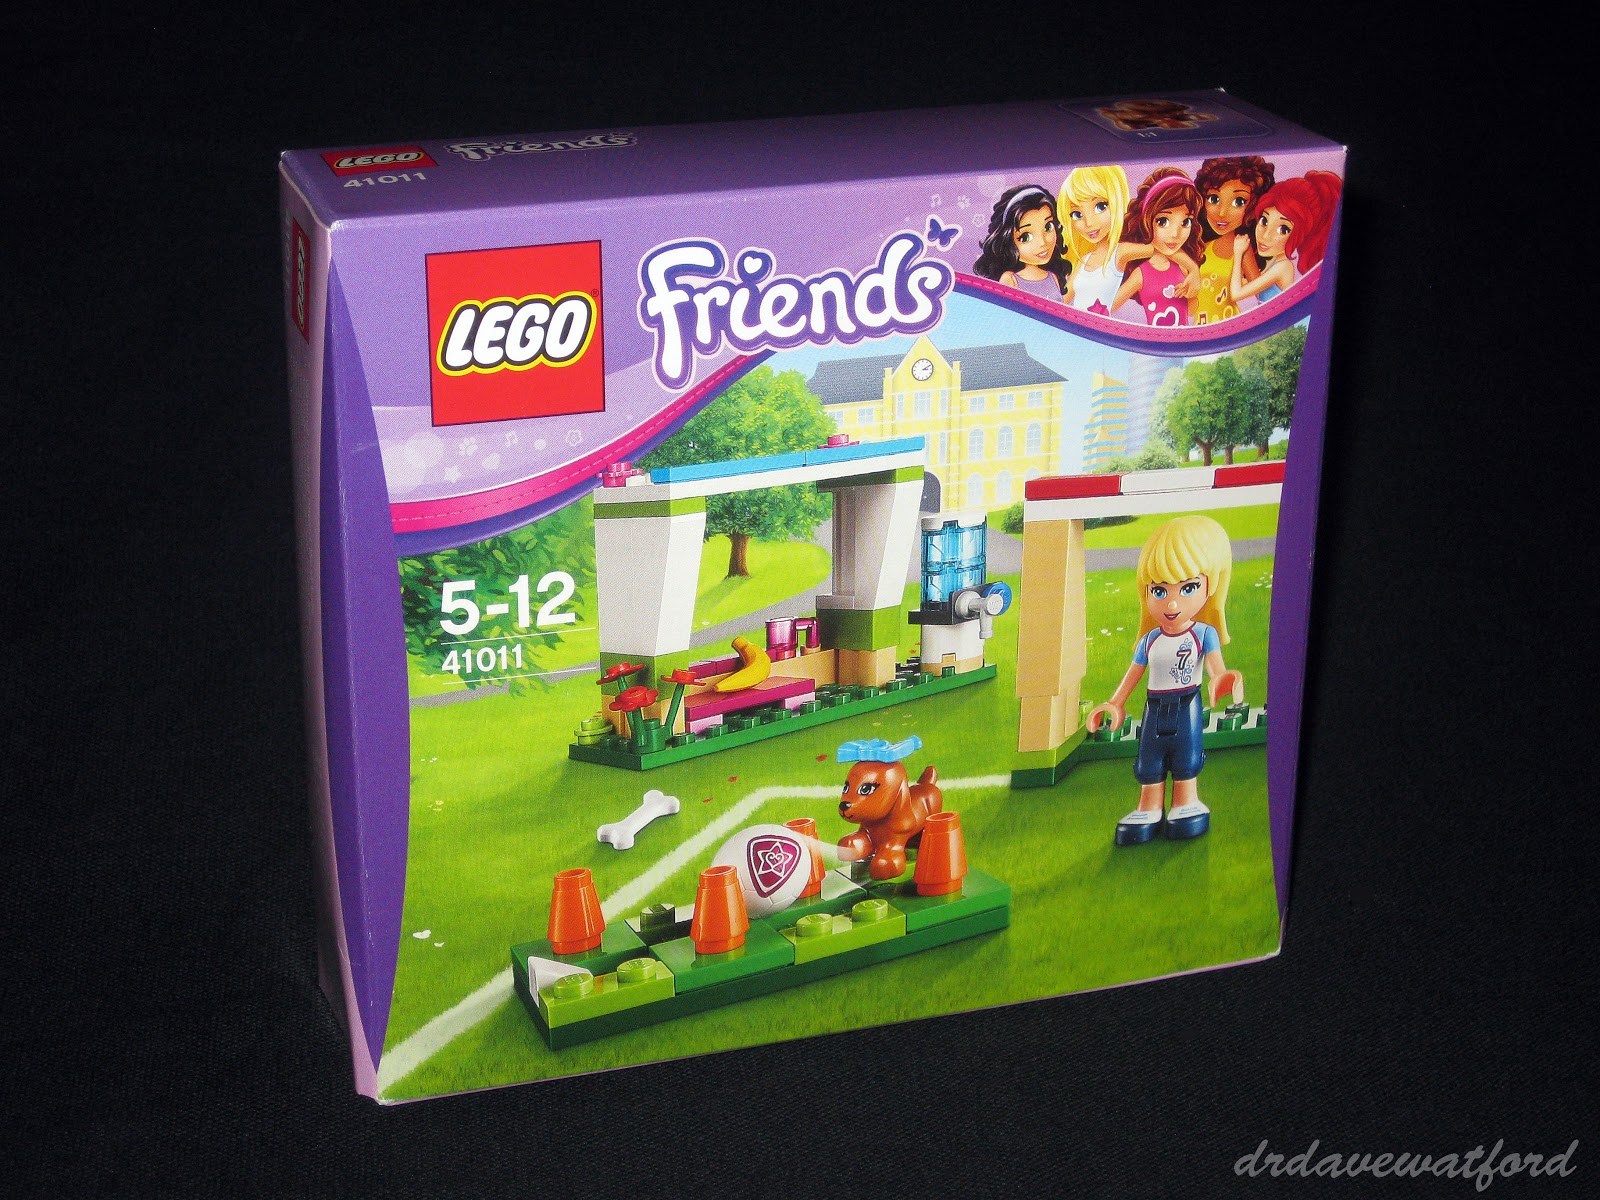 LEGO Friends Stephanie's Football Practice Playset - 41011.